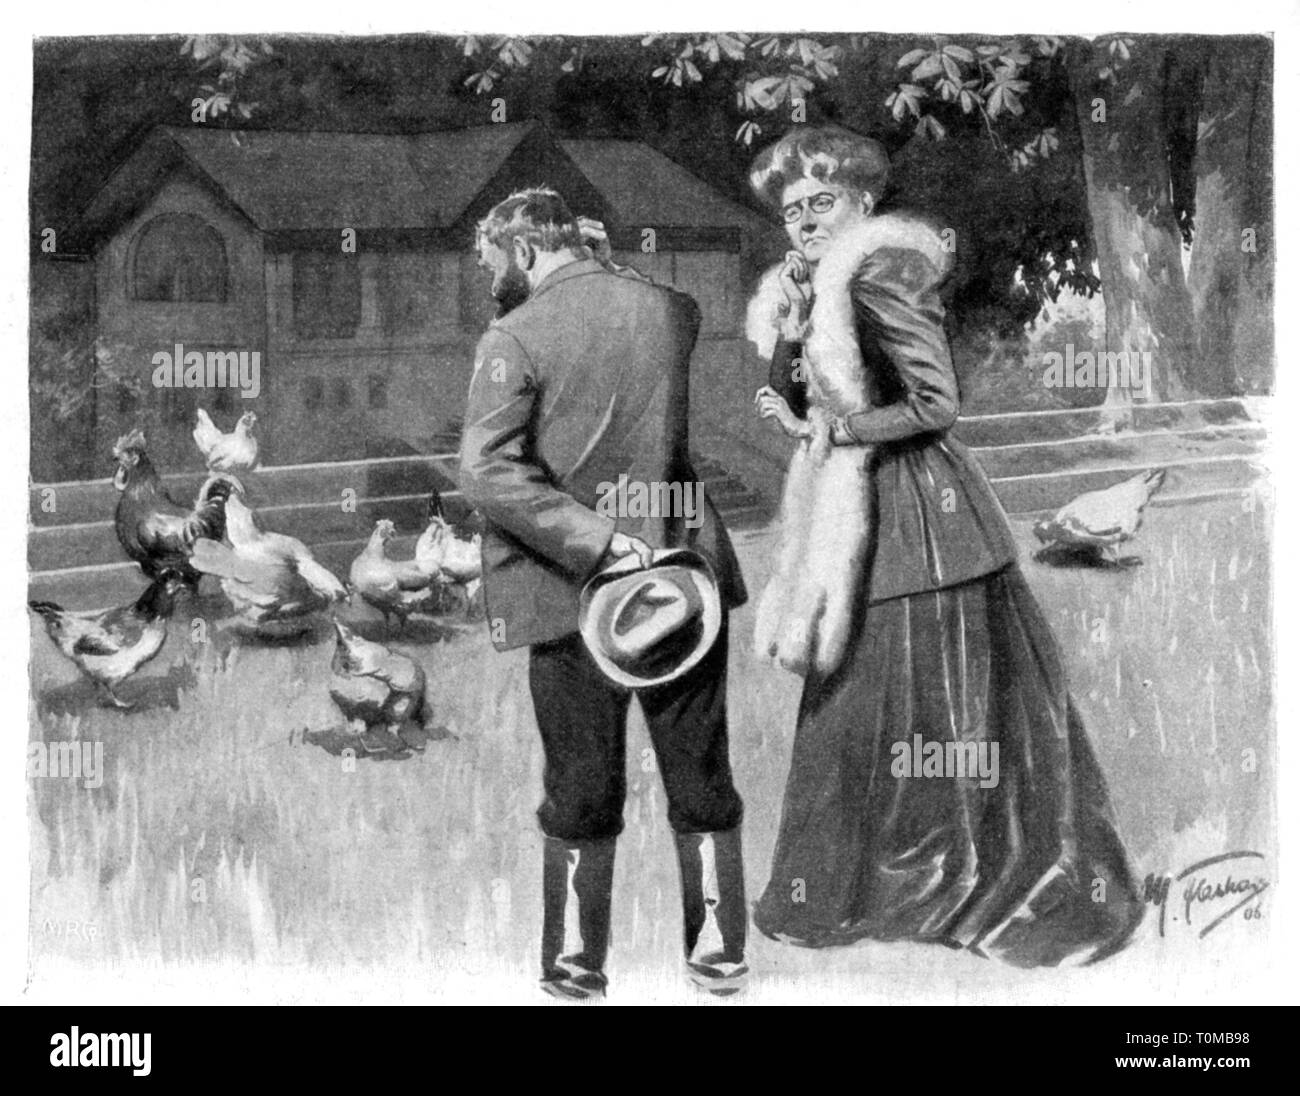 La caricatura, 'Viel verlangt' (per chiedere un po' troppo), disegno da Max Flashar (1855 - 1915), fuori: "Fliegende Blätter', Monaco, 1906, artista del diritto d'autore non deve essere cancellata Foto Stock